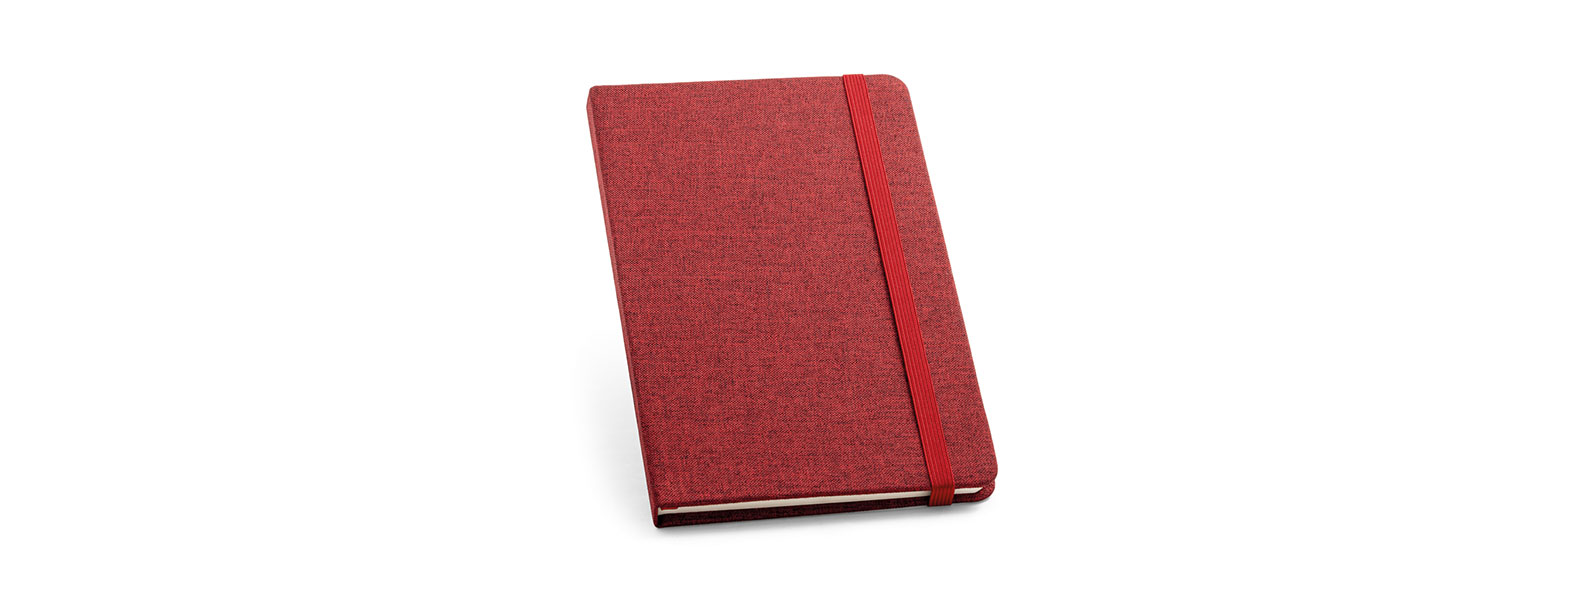 Caderno para anotações com capa dura revestida de Poliéster vermelho. Conta com 80 folhas pautadas, marca página e elástico para fechamento. Gramatura da folha de 70 g/m2